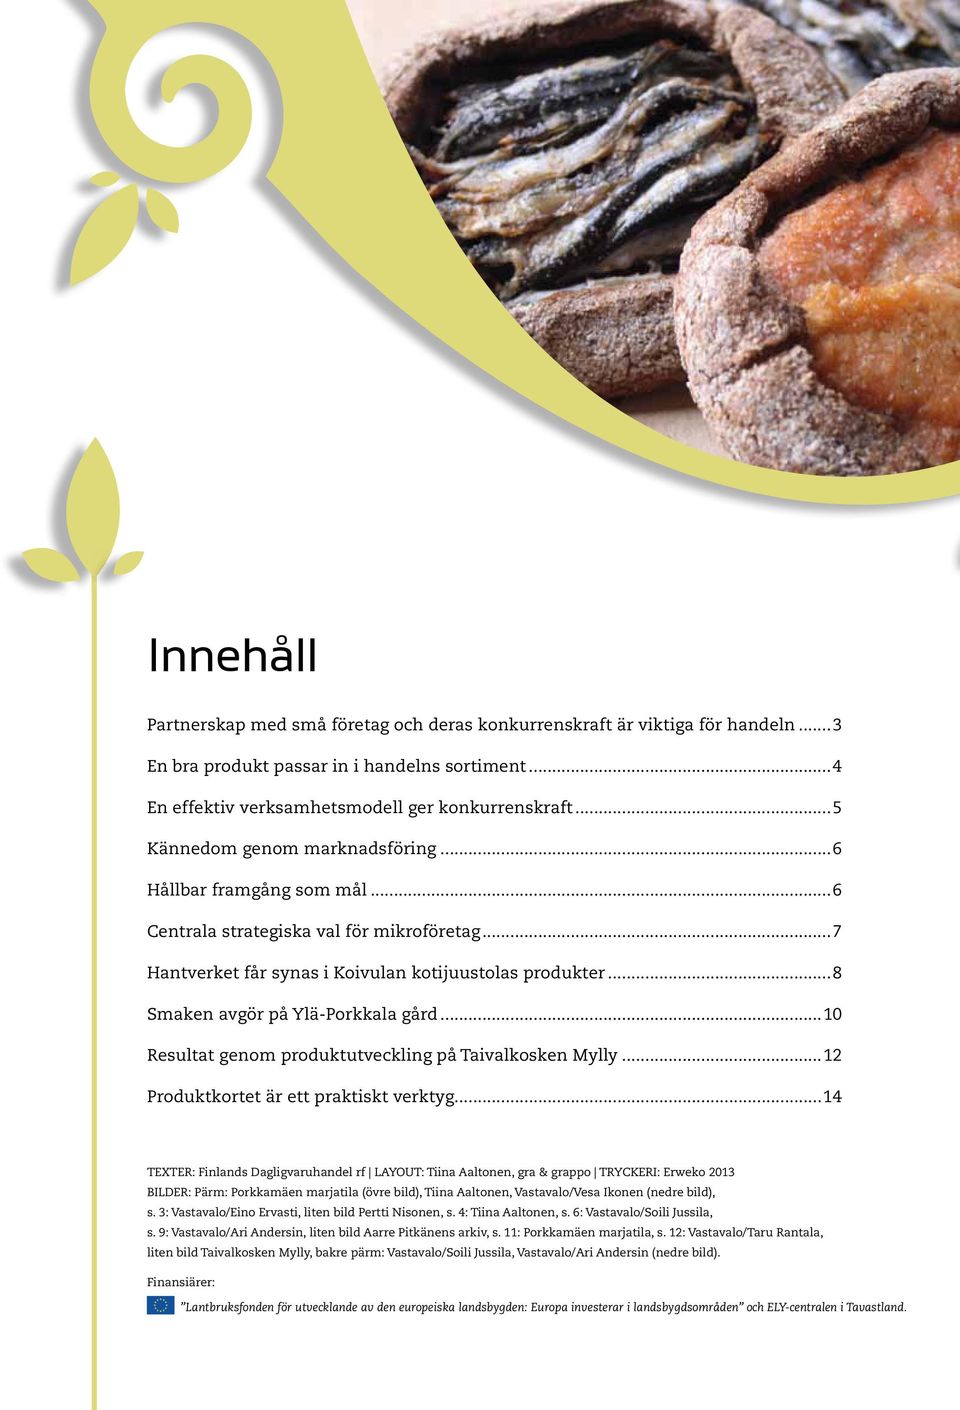 ..8 Smaken avgör på Ylä-Porkkala gård...10 Resultat genom produktutveckling på Taivalkosken Mylly...12 Produktkortet är ett praktiskt verktyg.